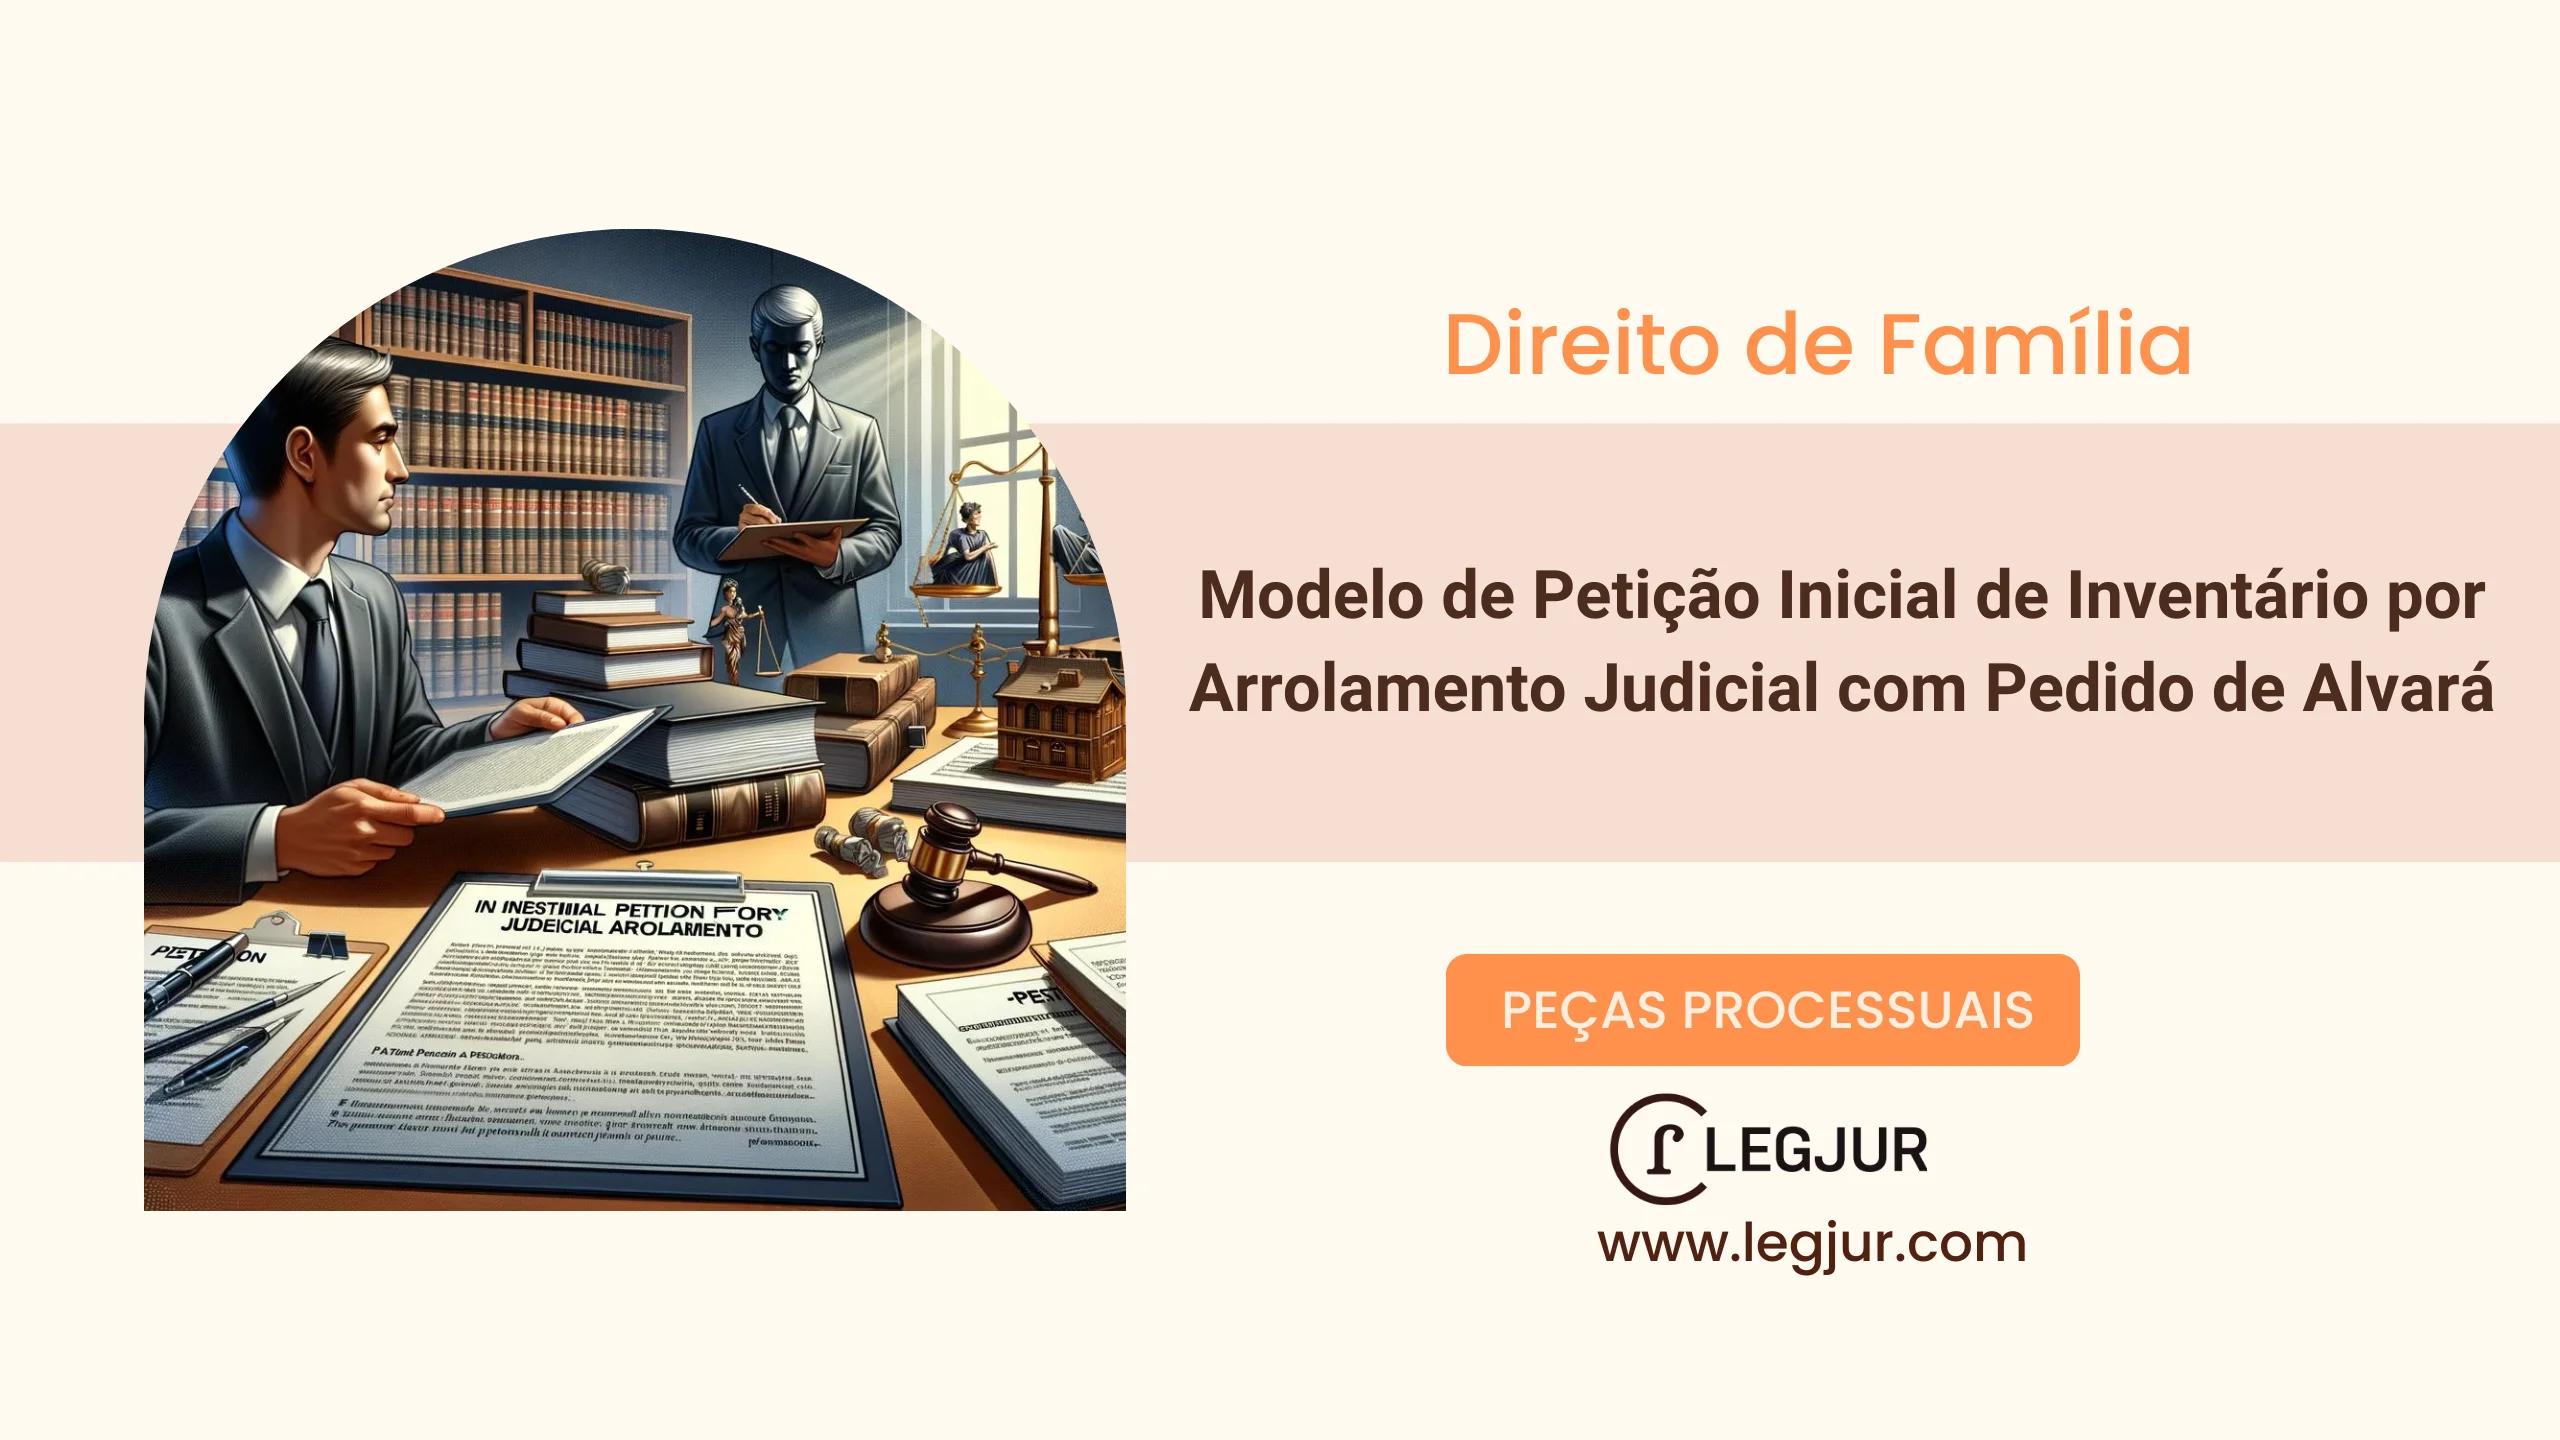 Modelo de Petição Inicial de Inventário por Arrolamento Judicial com Pedido de Alvará